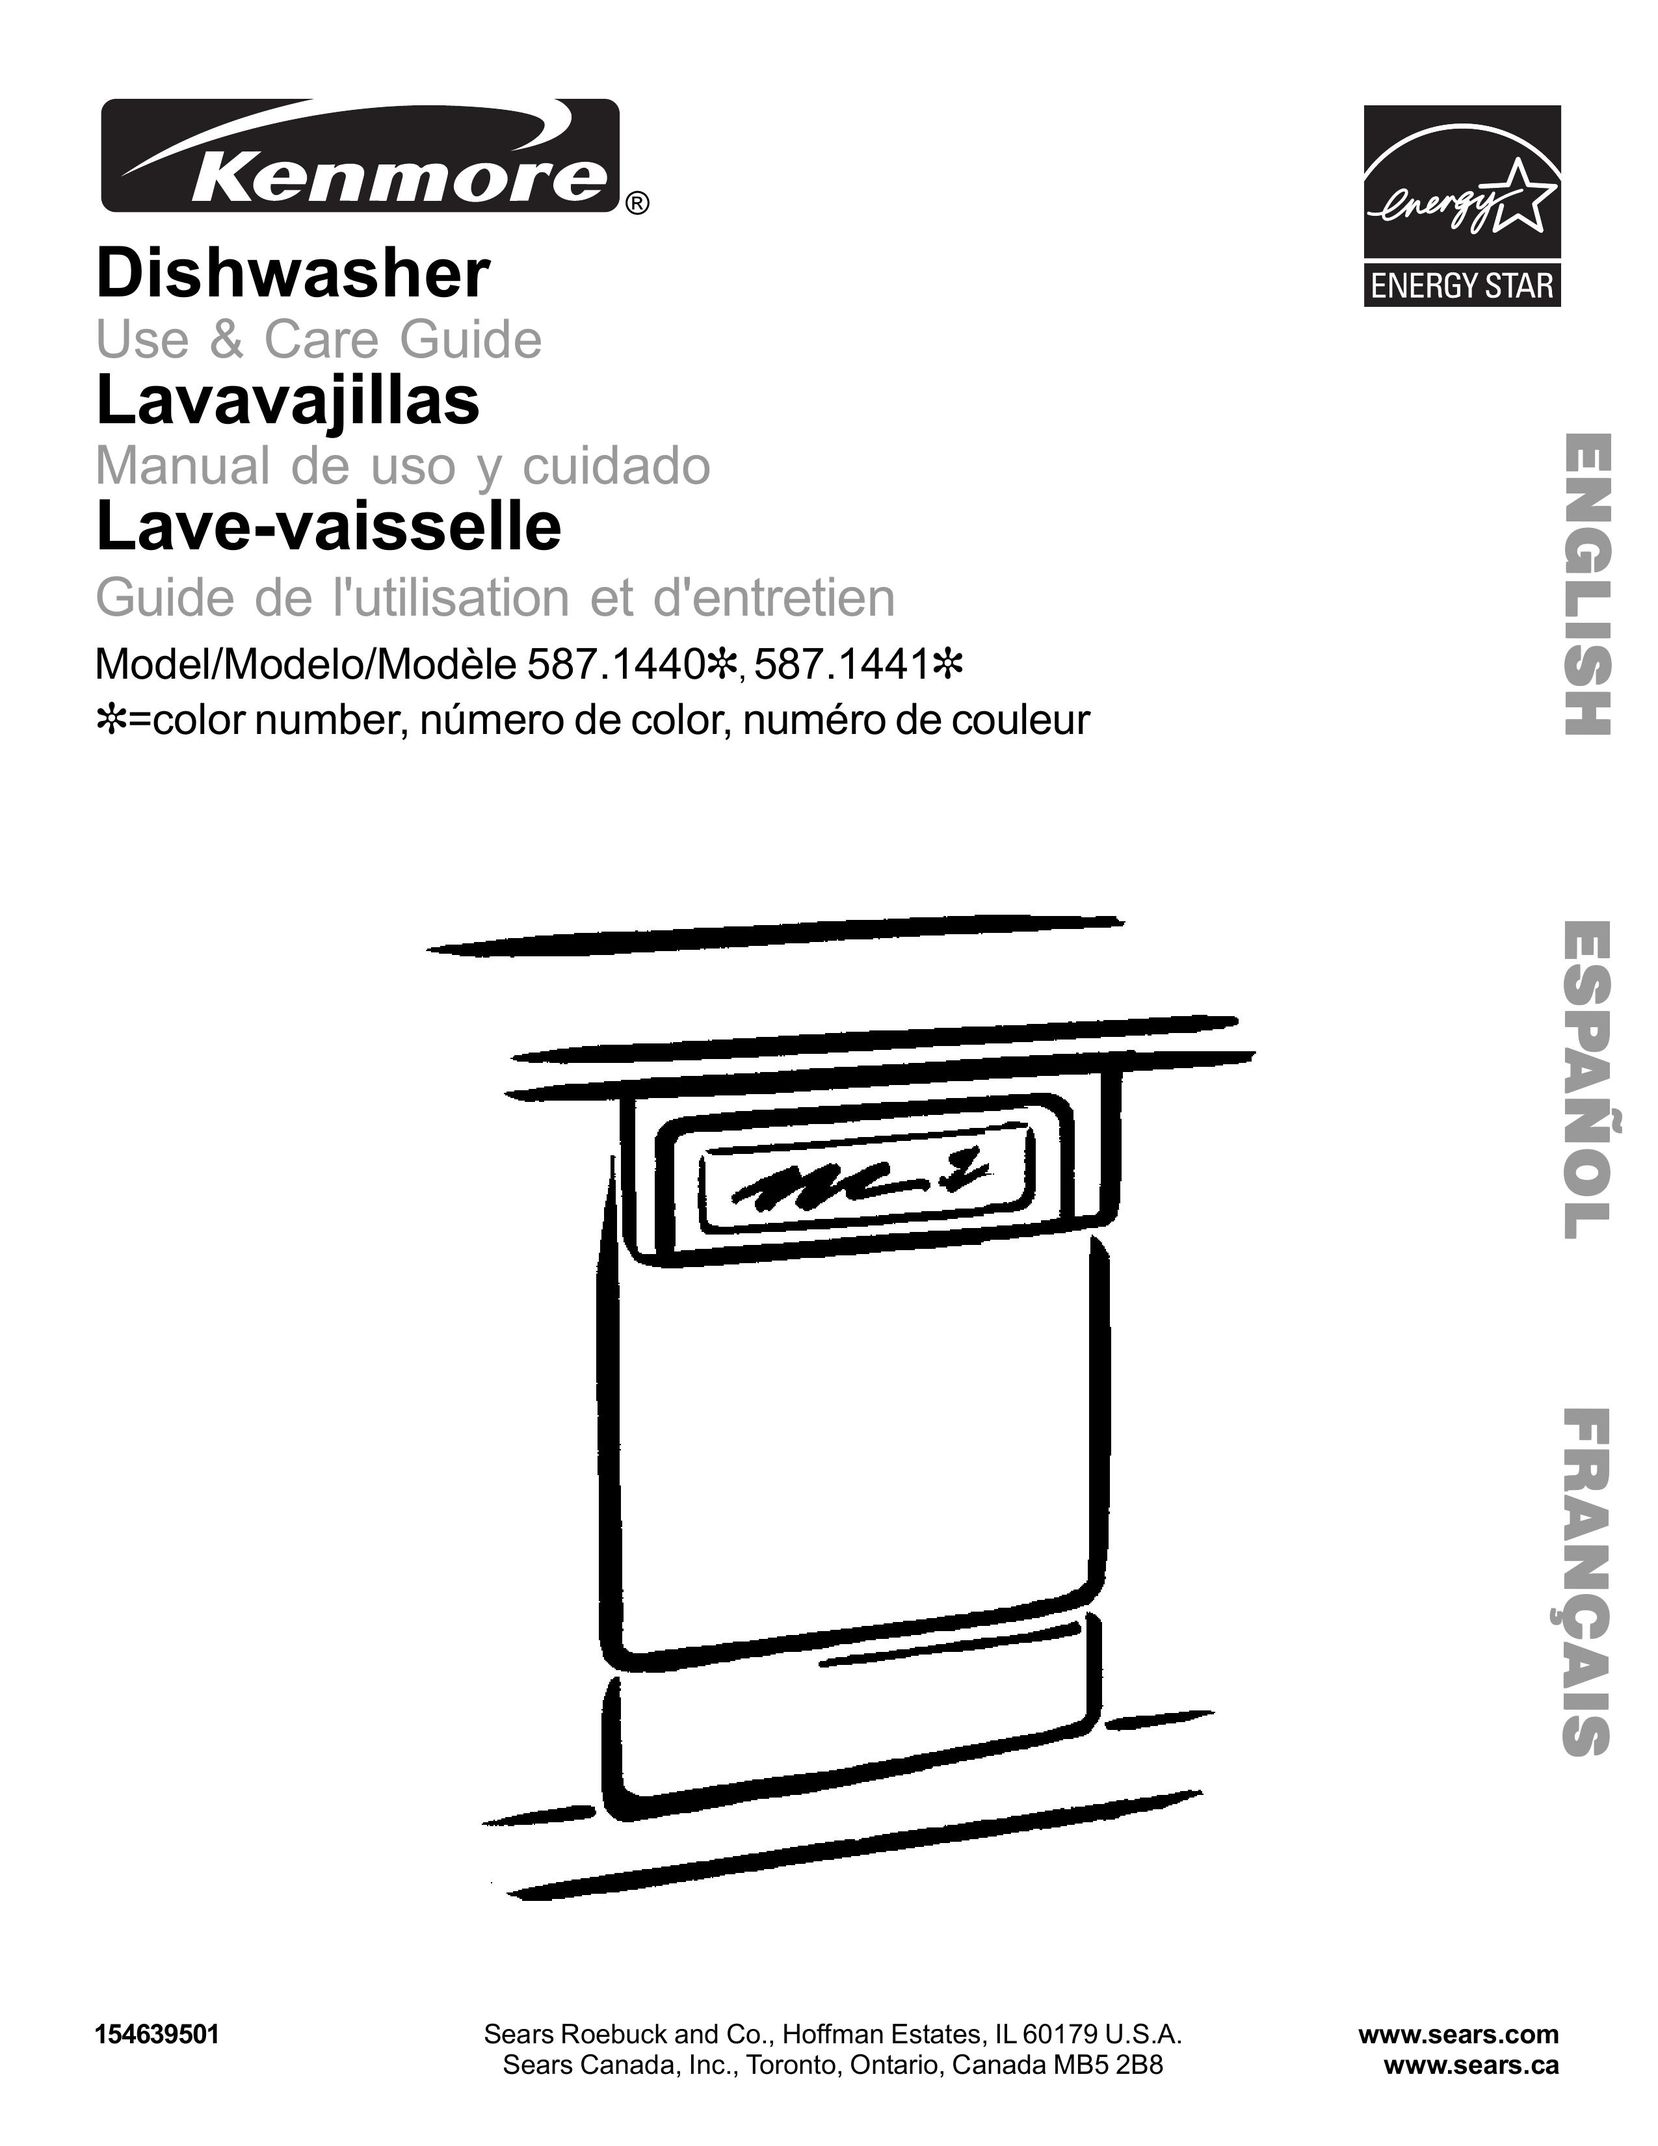 Kenmore 587.1441 Dishwasher User Manual